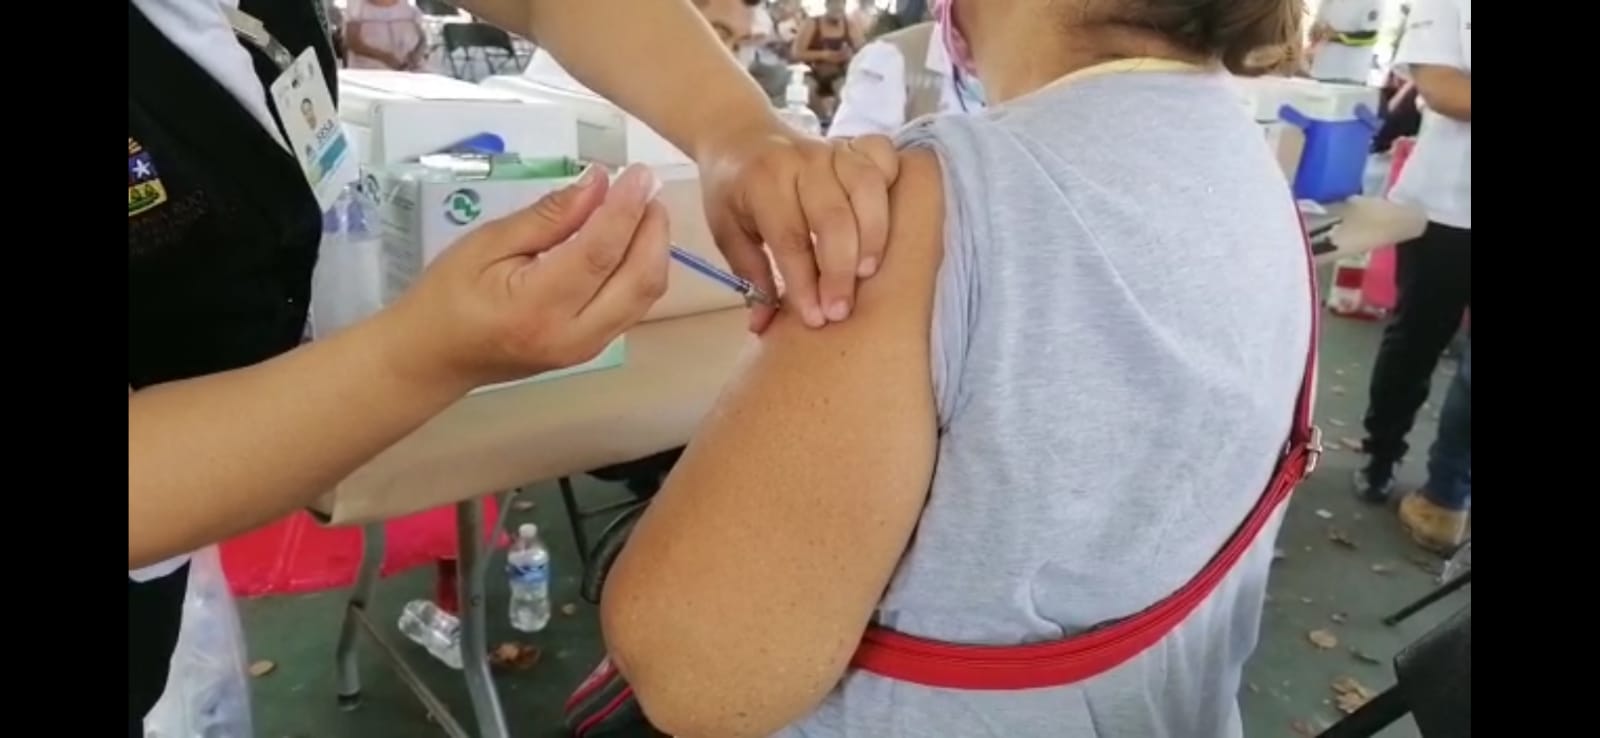 Este lunes 31 de mayo, y el 1 de Junio del 2021, se reanuda la vacunación contra Covid-19 para que recibir exclusivamente la segunda dosis en las personas de 50 a 59 años en Tulum, que fueron beneficiados con la primera aplicación de biológicos de las farmacéuticas Pfizer y Sinovac.